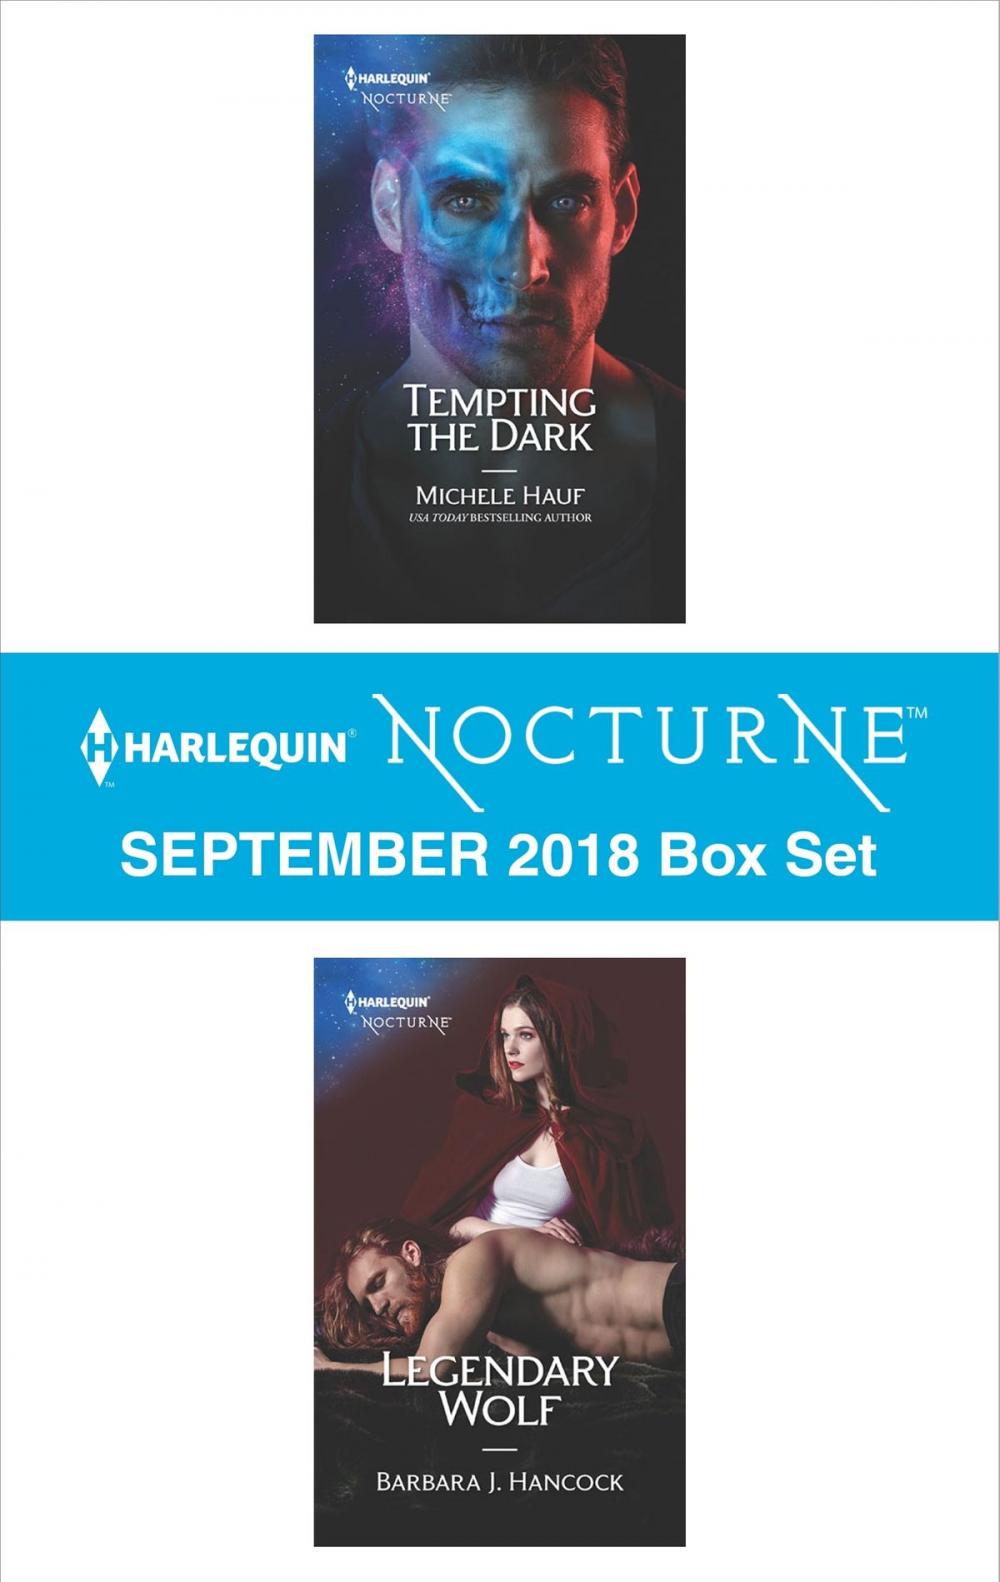 Big bigCover of Harlequin Nocturne September 2018 Box Set